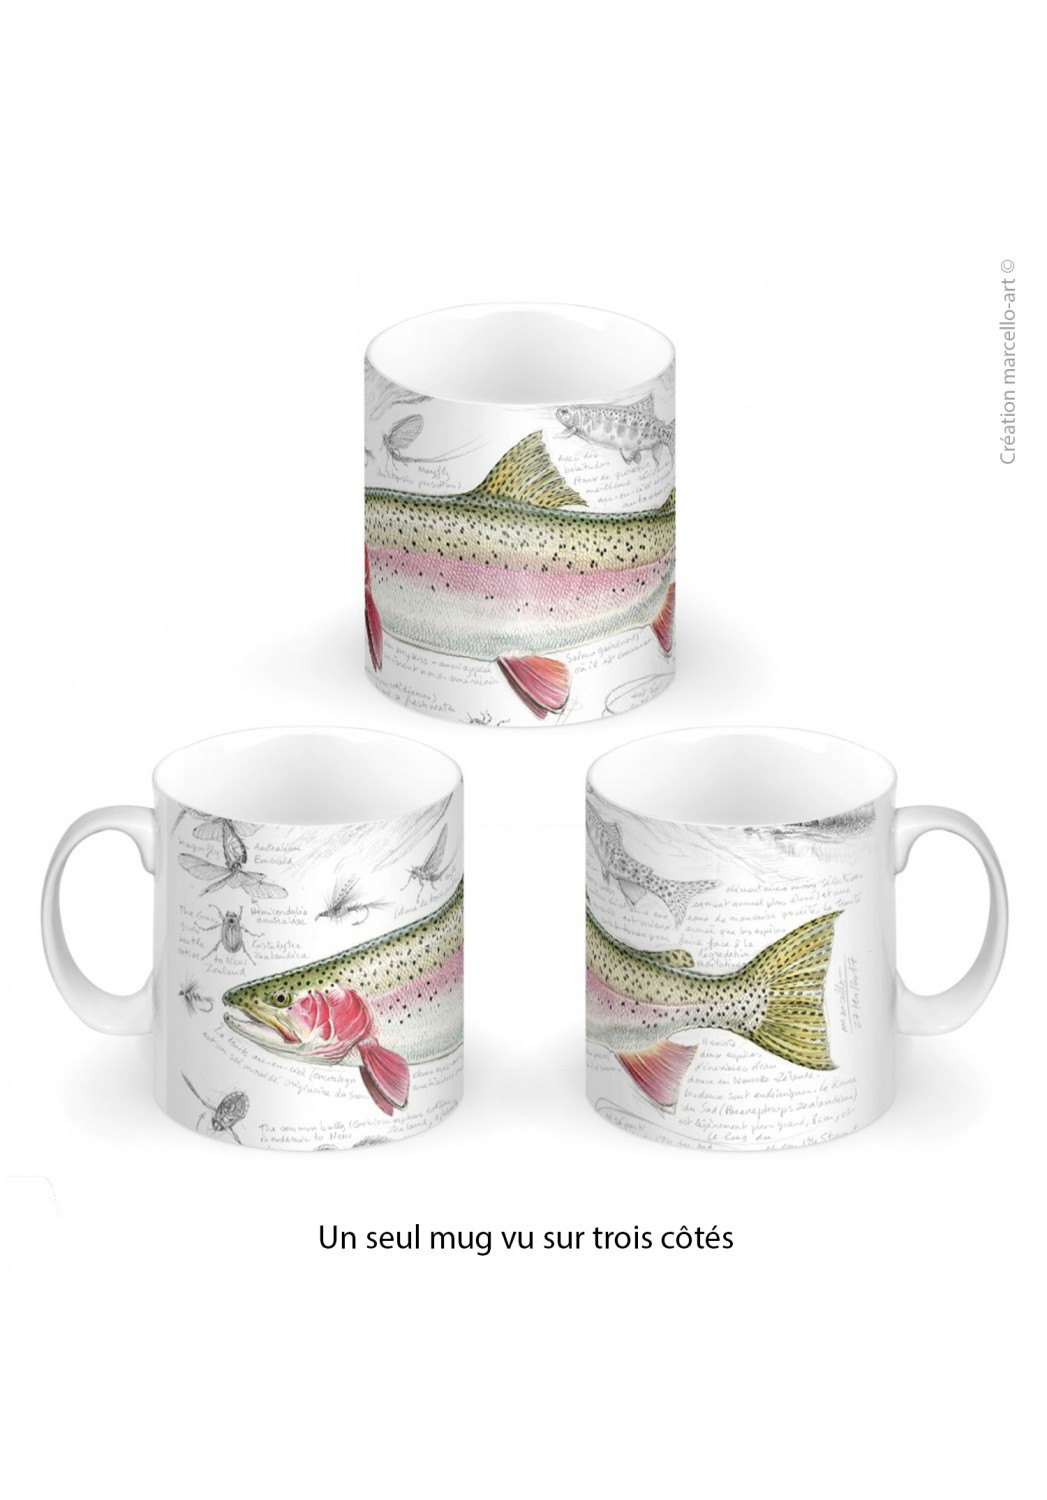 Marcello-art: Decoration accessoiries Porcelain mug 373 rainbow trout